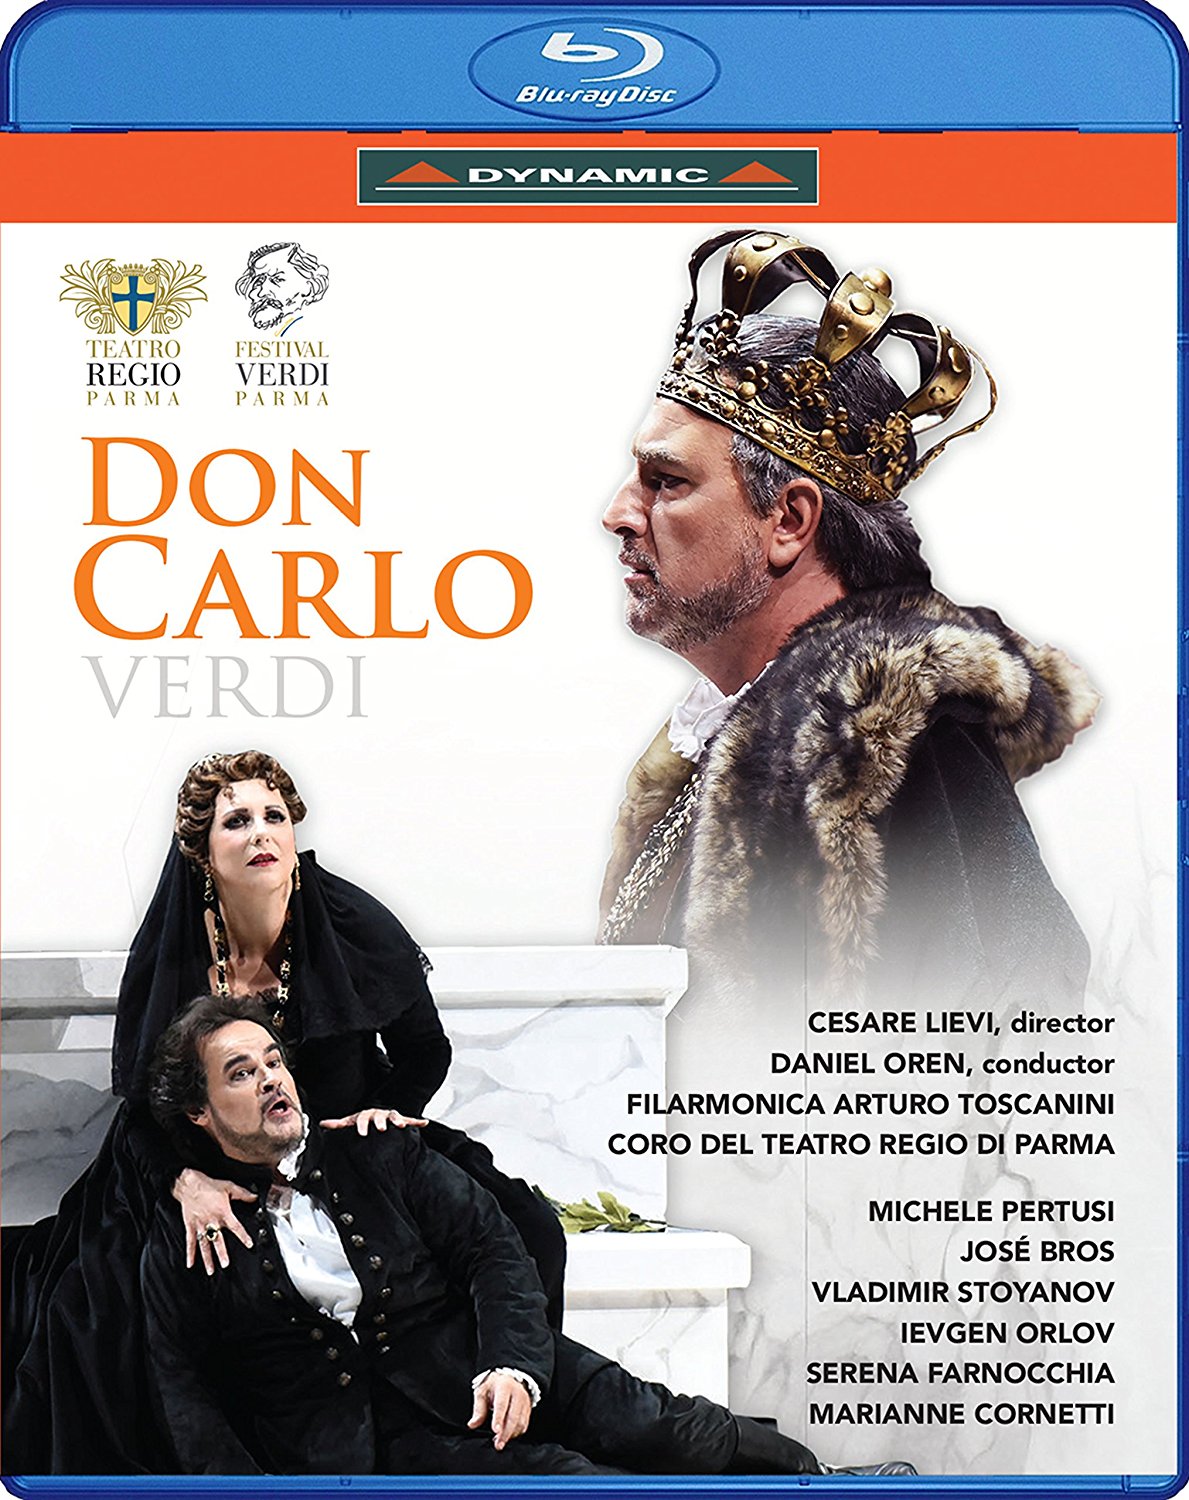 Music Blu-Ray Giuseppe Verdi - Don Carlo NUOVO SIGILLATO, EDIZIONE DEL 17/05/2017 SUBITO DISPONIBILE